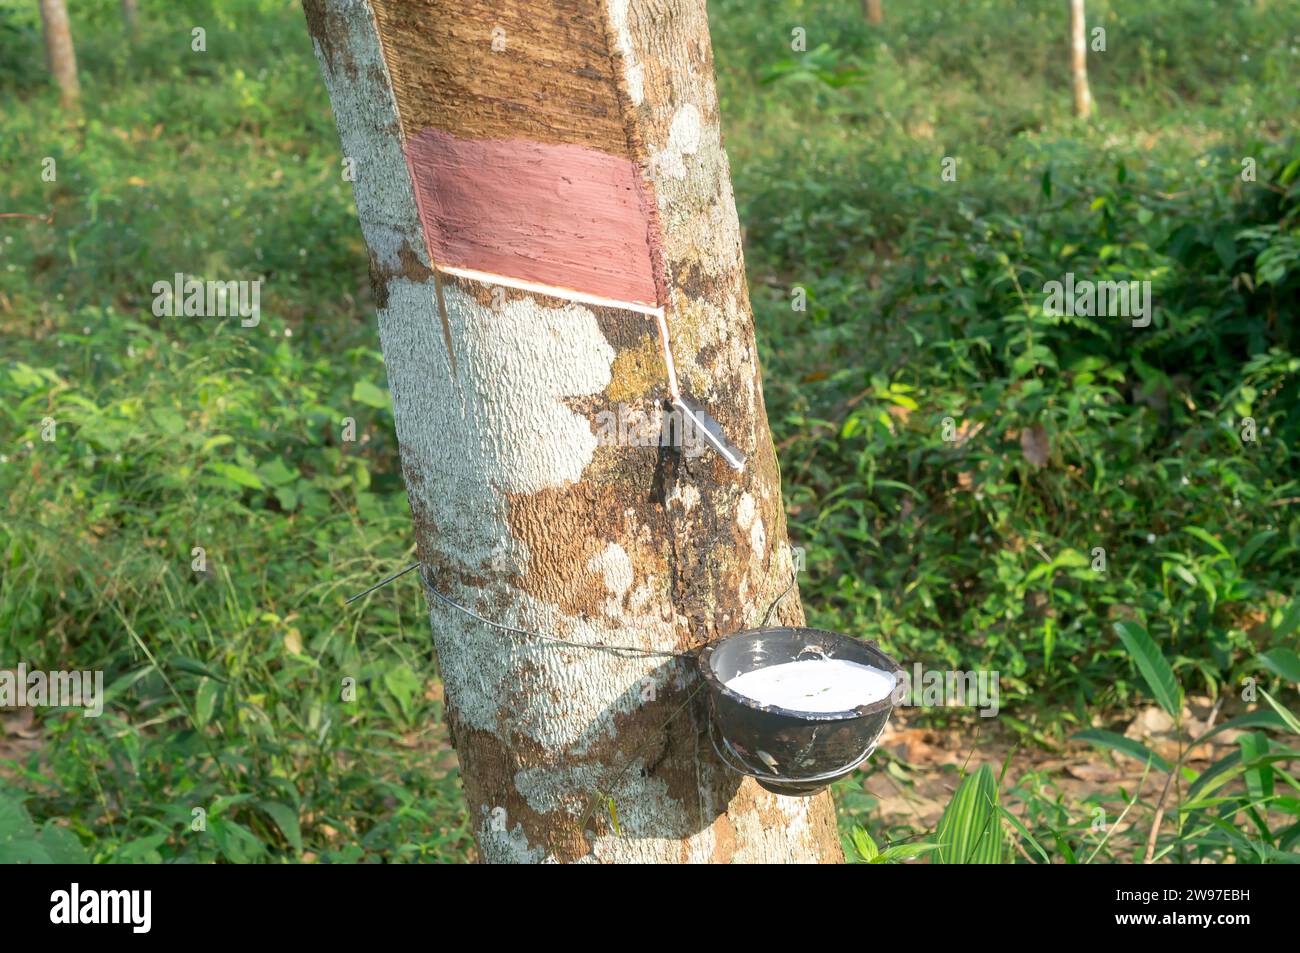 L'albero di gomma fornisce un'ottima resa di lattice di gomma naturale, spillato o estratto dall'albero di gomma nella piantagione di gomma nel sud della Thailandia. Foto Stock